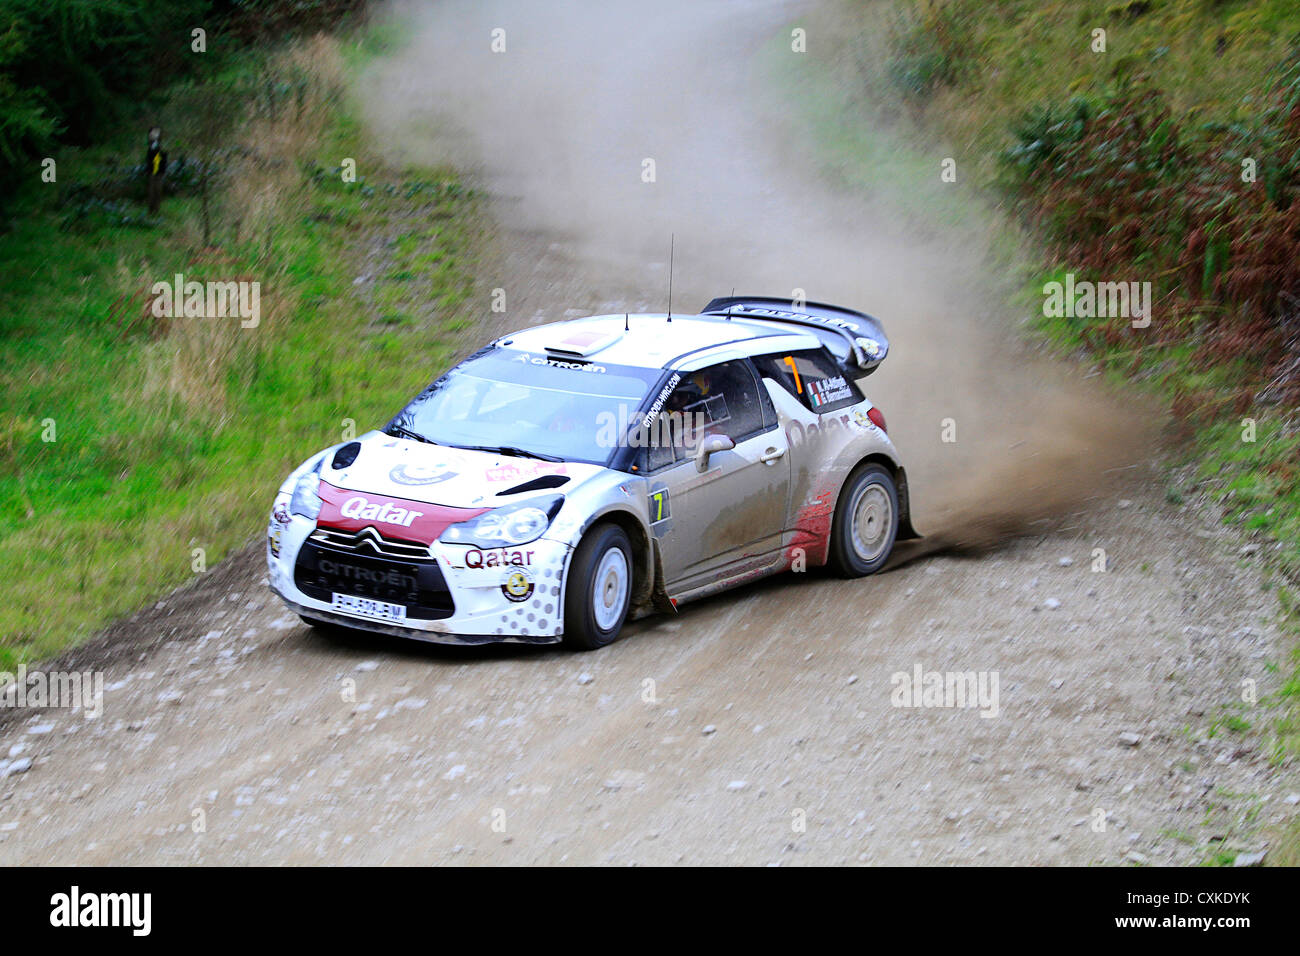 WRC 2012, Galles, Al-Attiyah Foto Stock